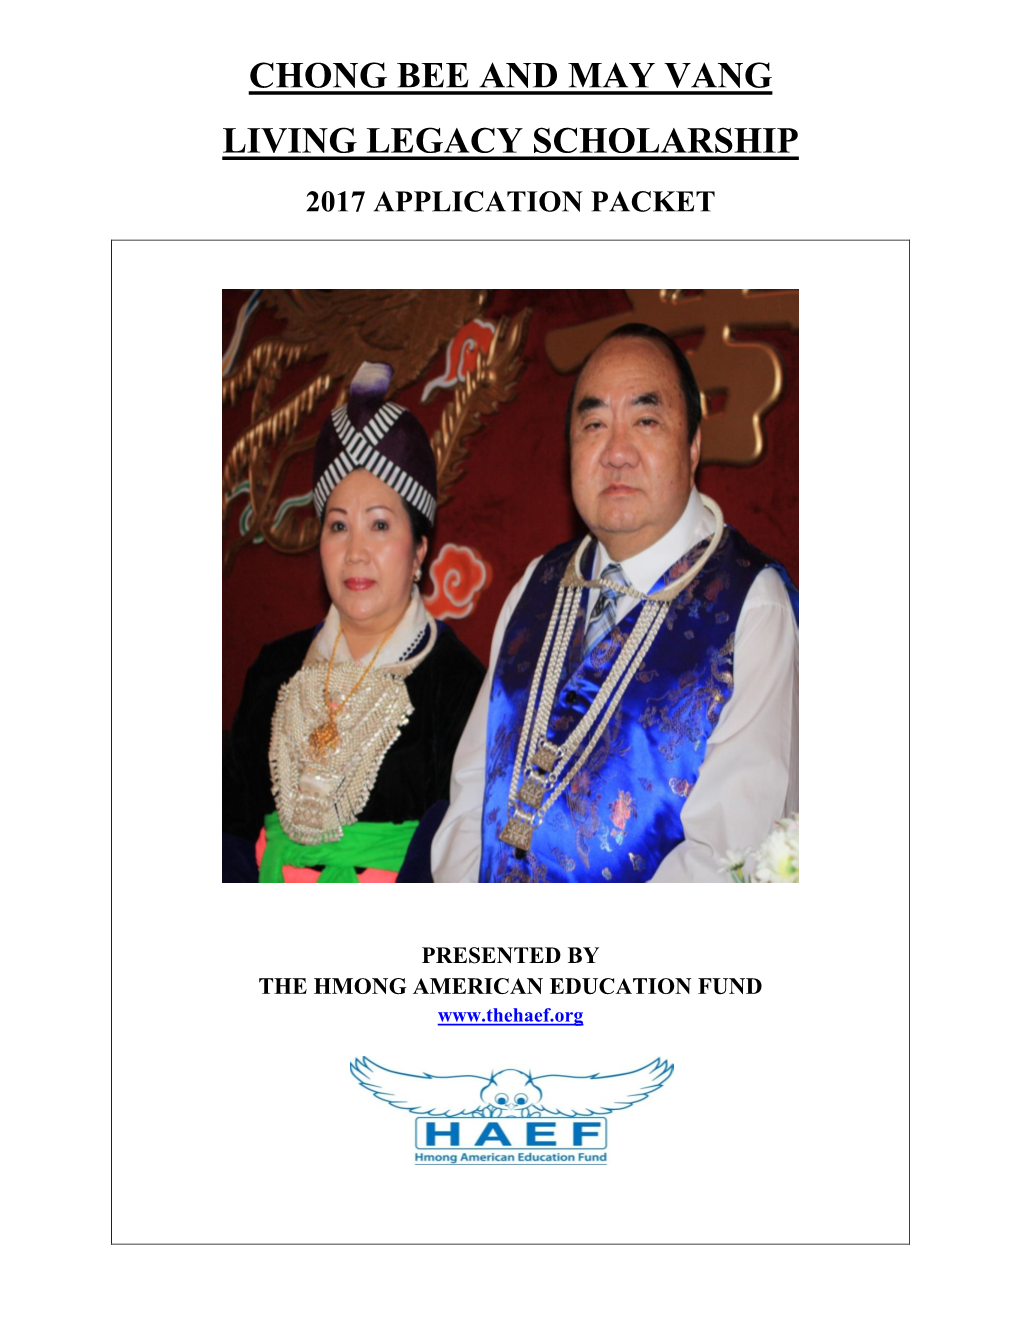 Chong Bee and May Vang Living Legacy Scholarship 2017 Application Packet